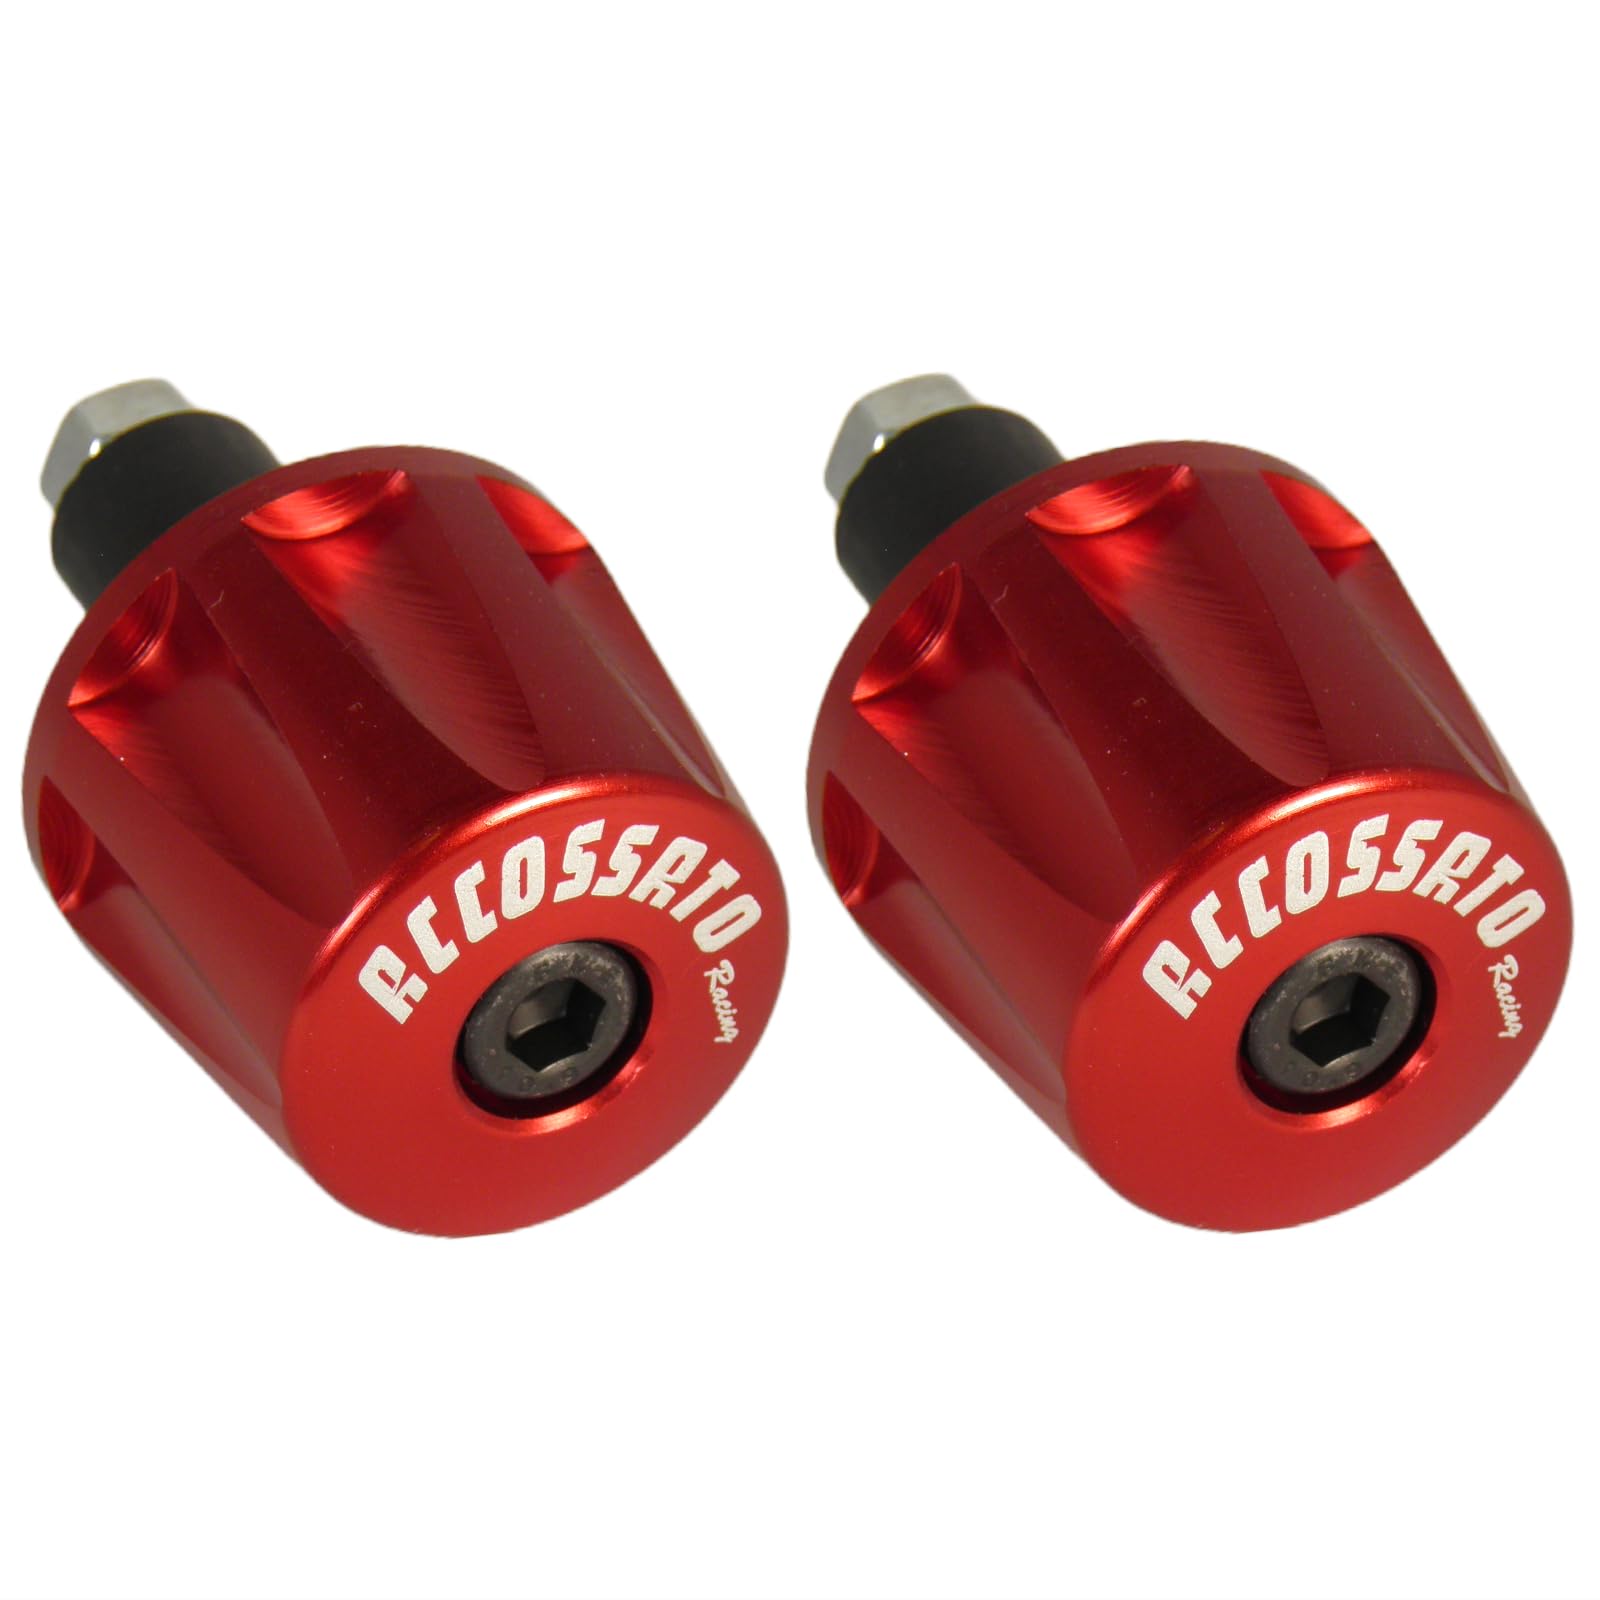 Paar rote Accossato Gegengewichte für Lenker mit Innenloch von 12 mm bis 20 mm für Benelli Trk 502 von 2017 bis 2019 (CC 500) von ACCOSSATO